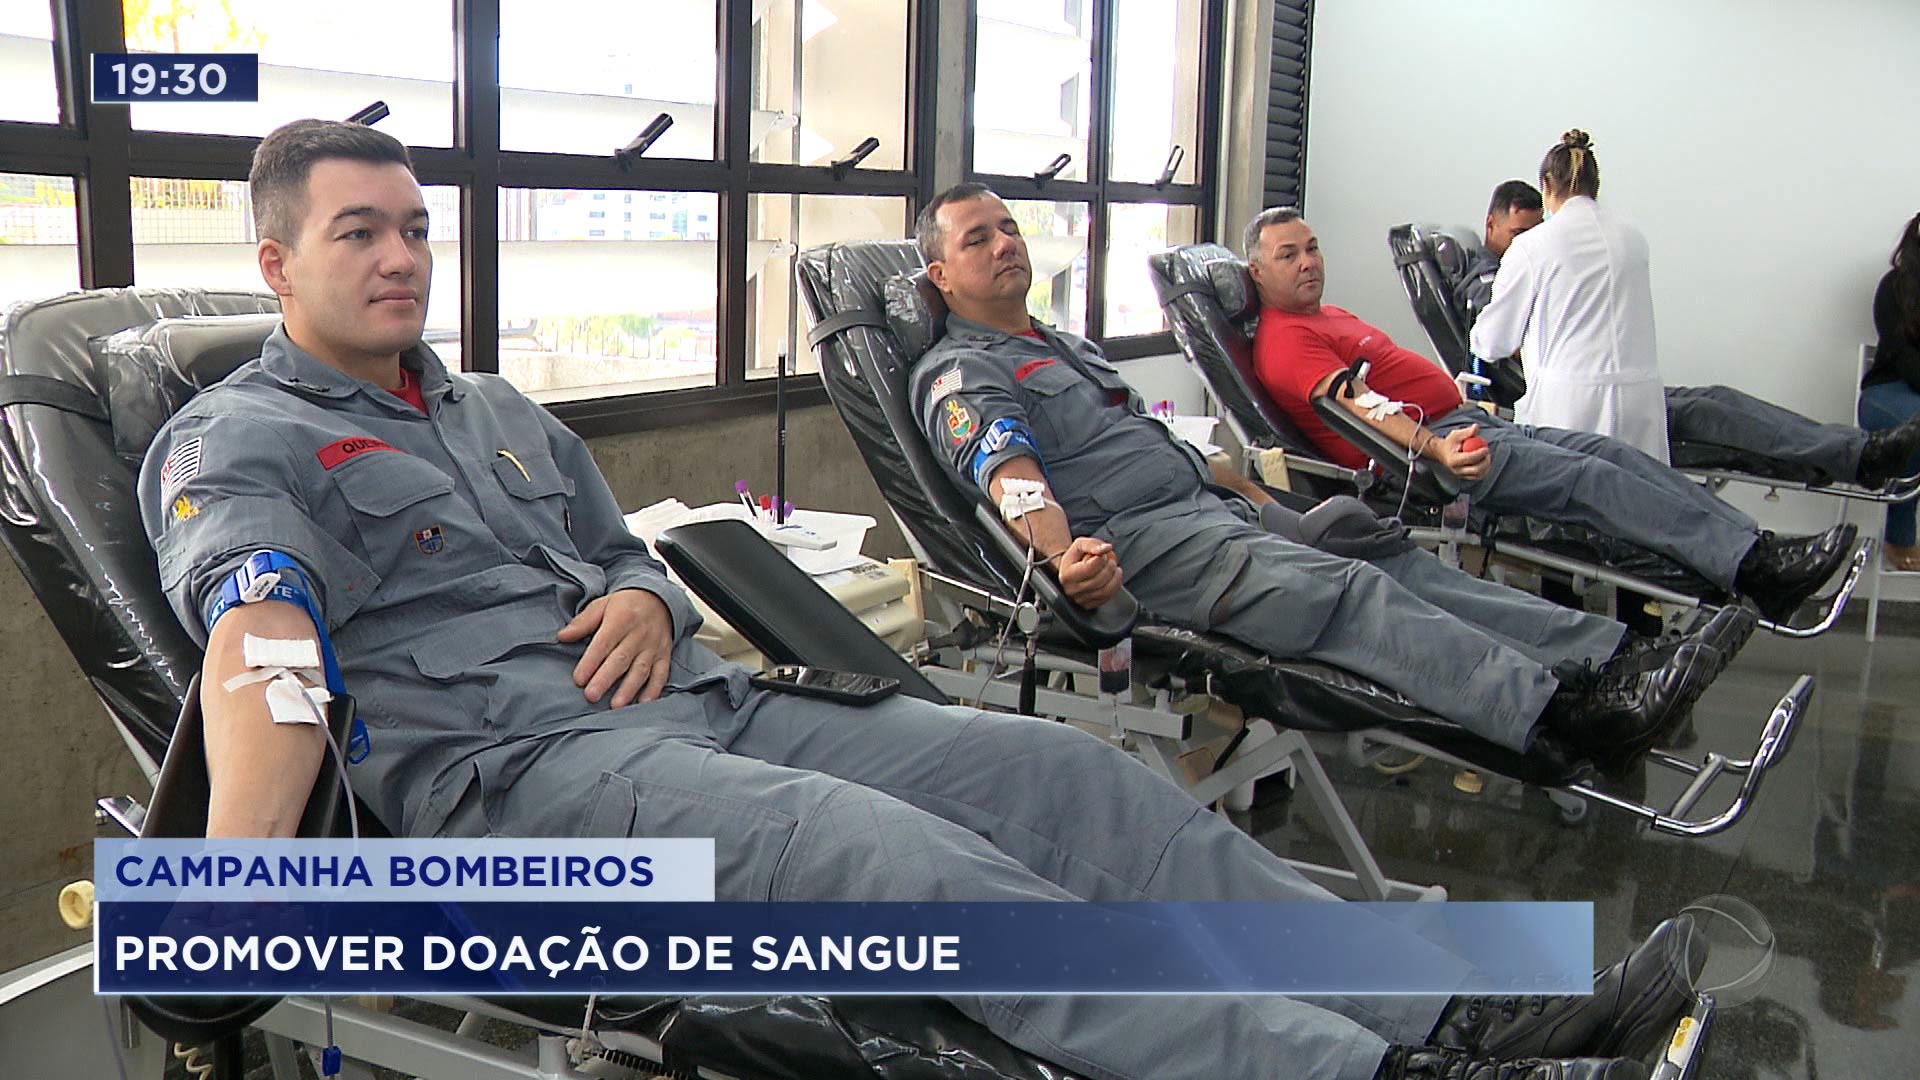 Vídeo: No inverno doações de sangue diminuem